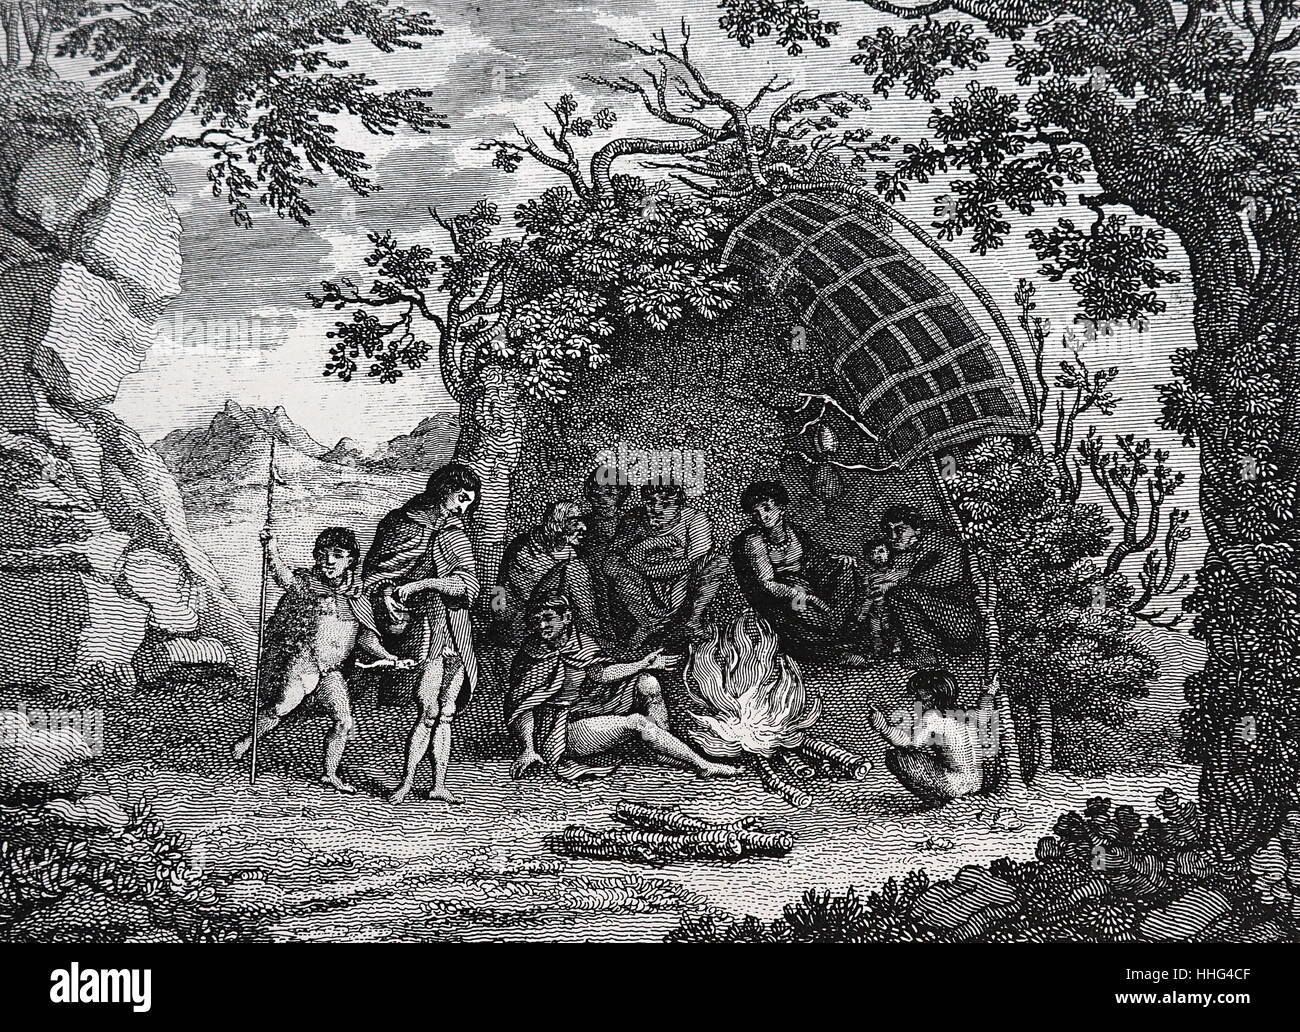 Natifs de la Terre de Feu, montrant leur vêtements et de logement. De Captain Cook's Voyages 'Original' Tour du monde. Magellan a rencontré ces indigènes sur son premier voyage de circumnavigation. (1519-22). La Terre de Feu 'Terre de Feu' ; est un archipel au large de la pointe sud du continent sud-américain, à travers le détroit de Magellan Banque D'Images